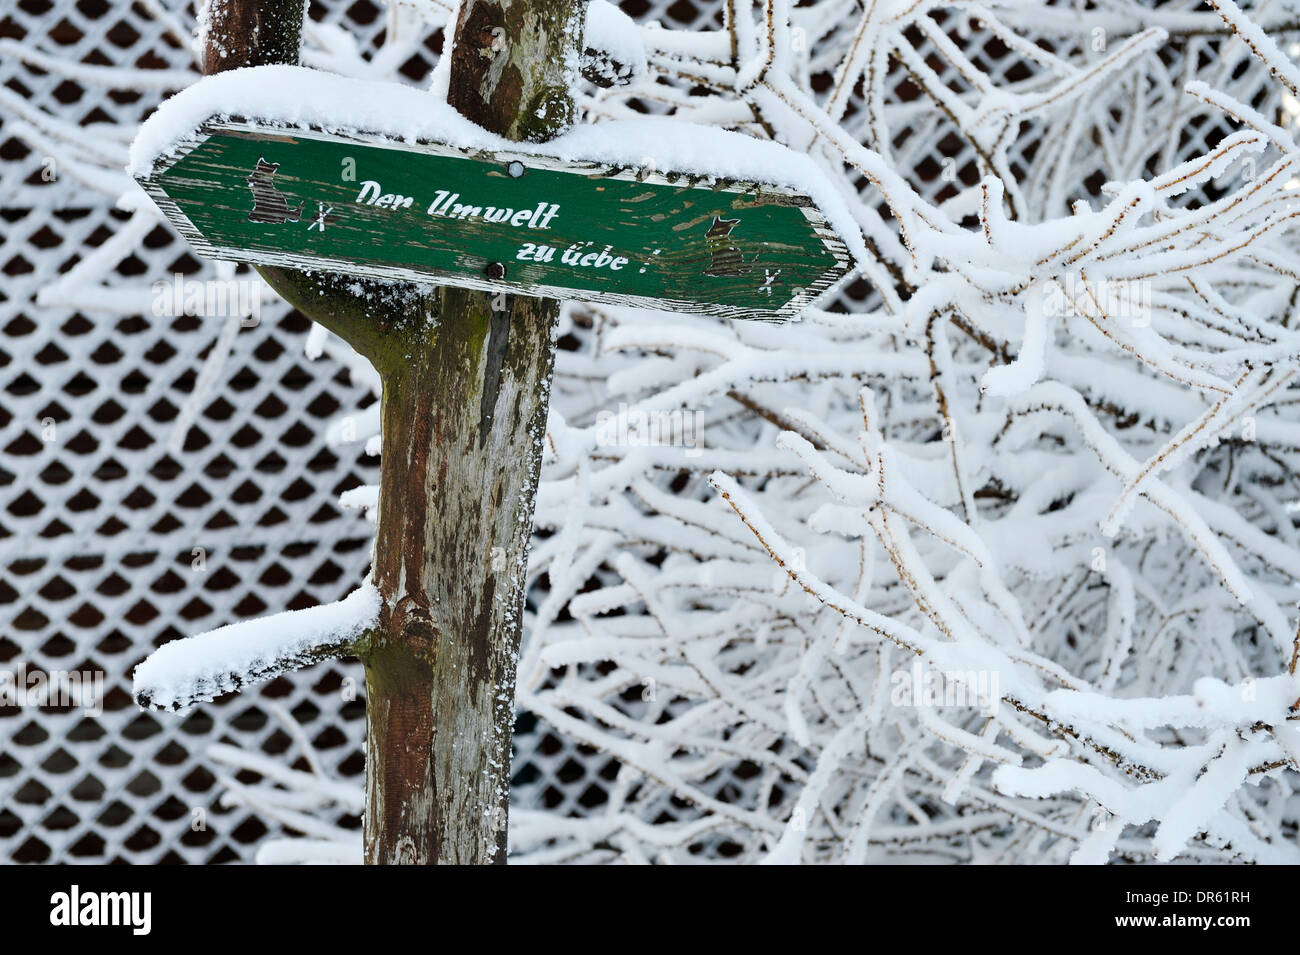 Deutschland, Thurinigia, Oberhof, Schild am Stamm des Baumes im winter Stockfoto